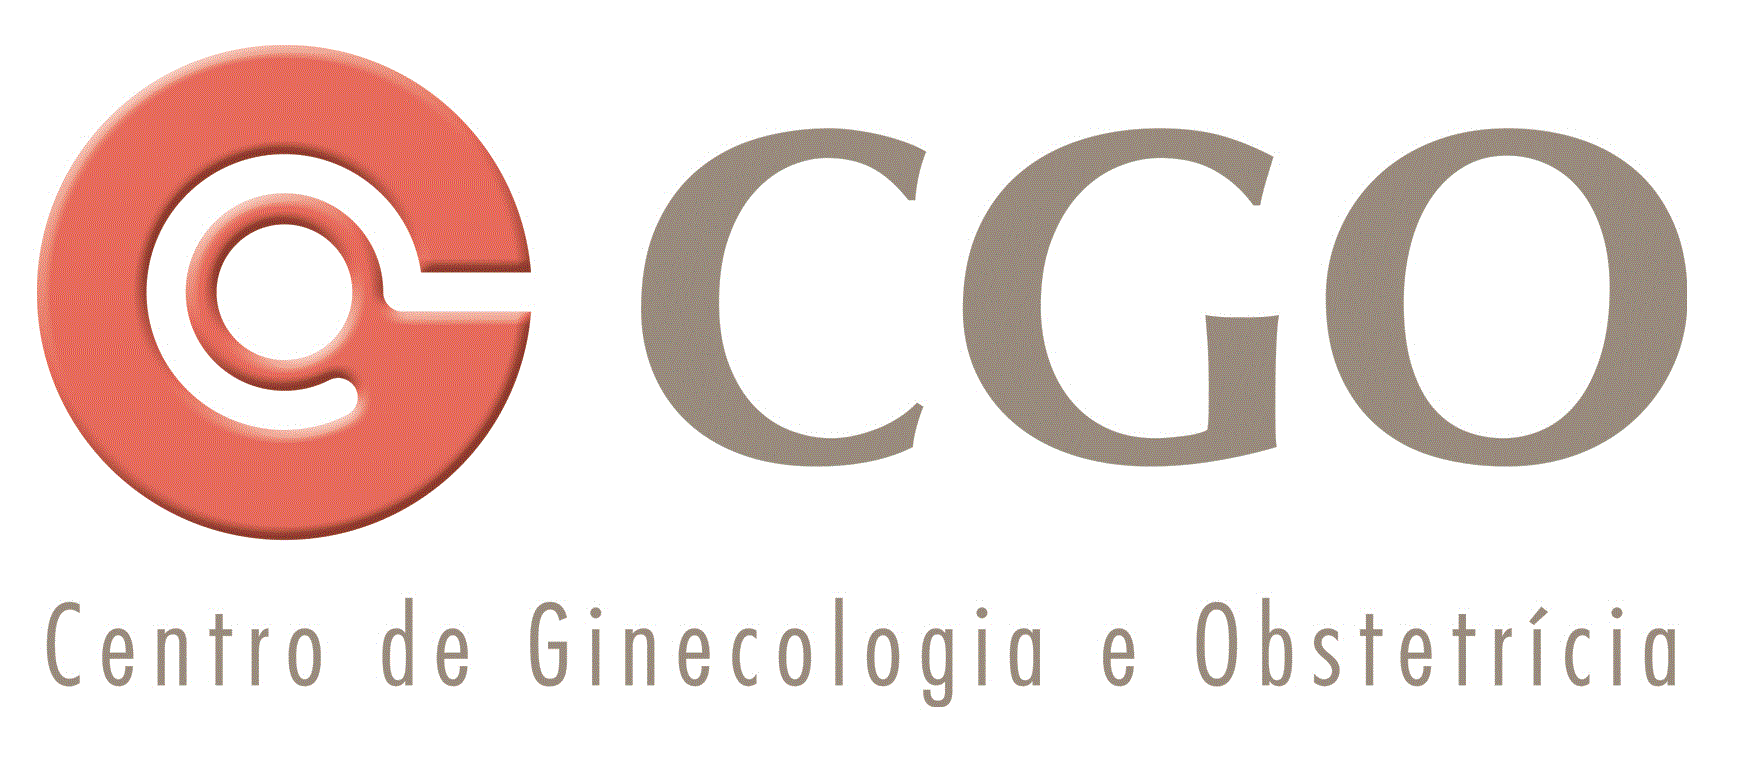 CGO - Centro de Ginecologia e Obstetrícia